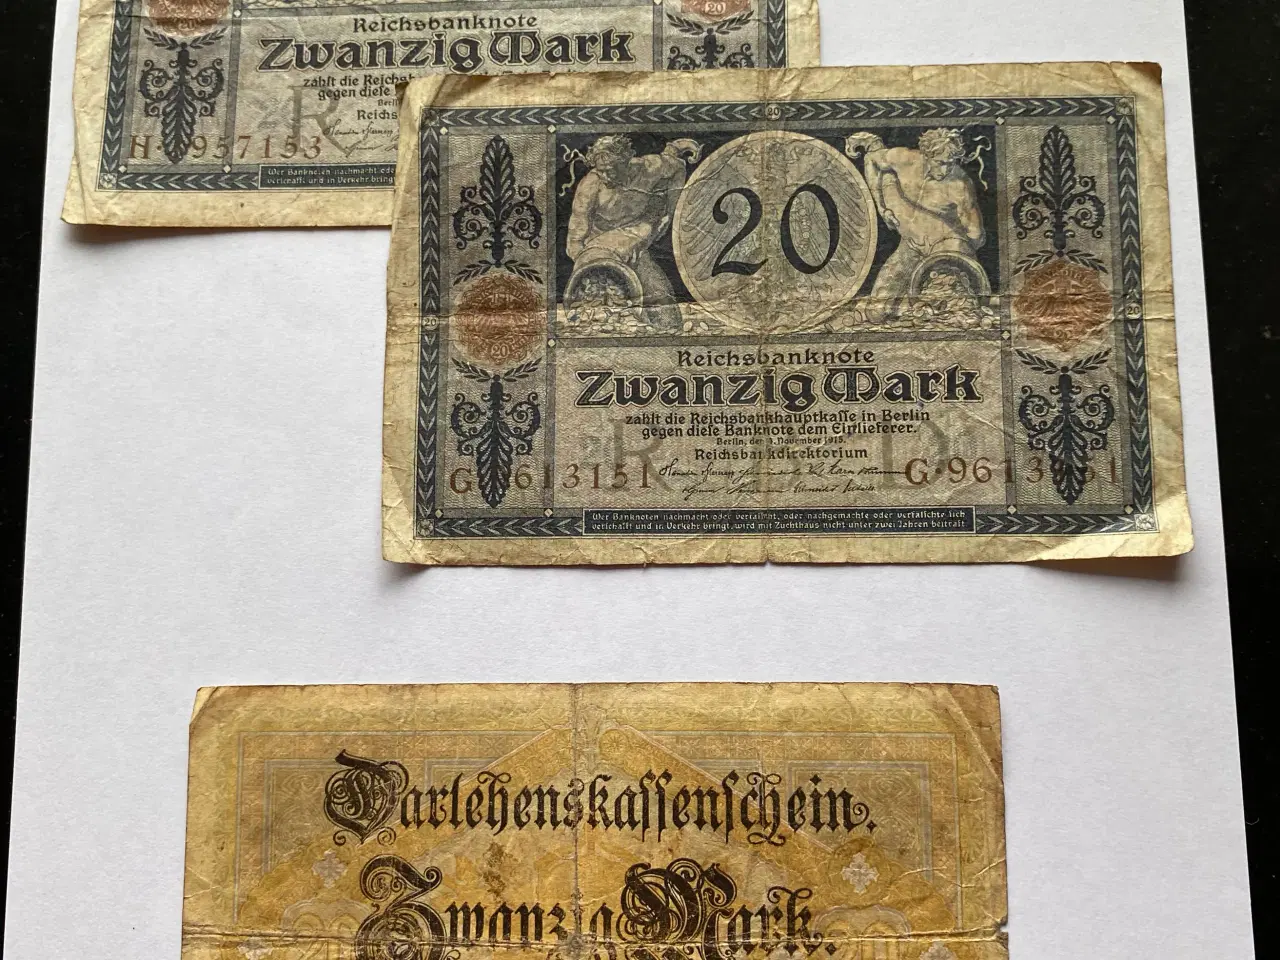 Billede 3 - Reichsbanknote - forskellige sedler